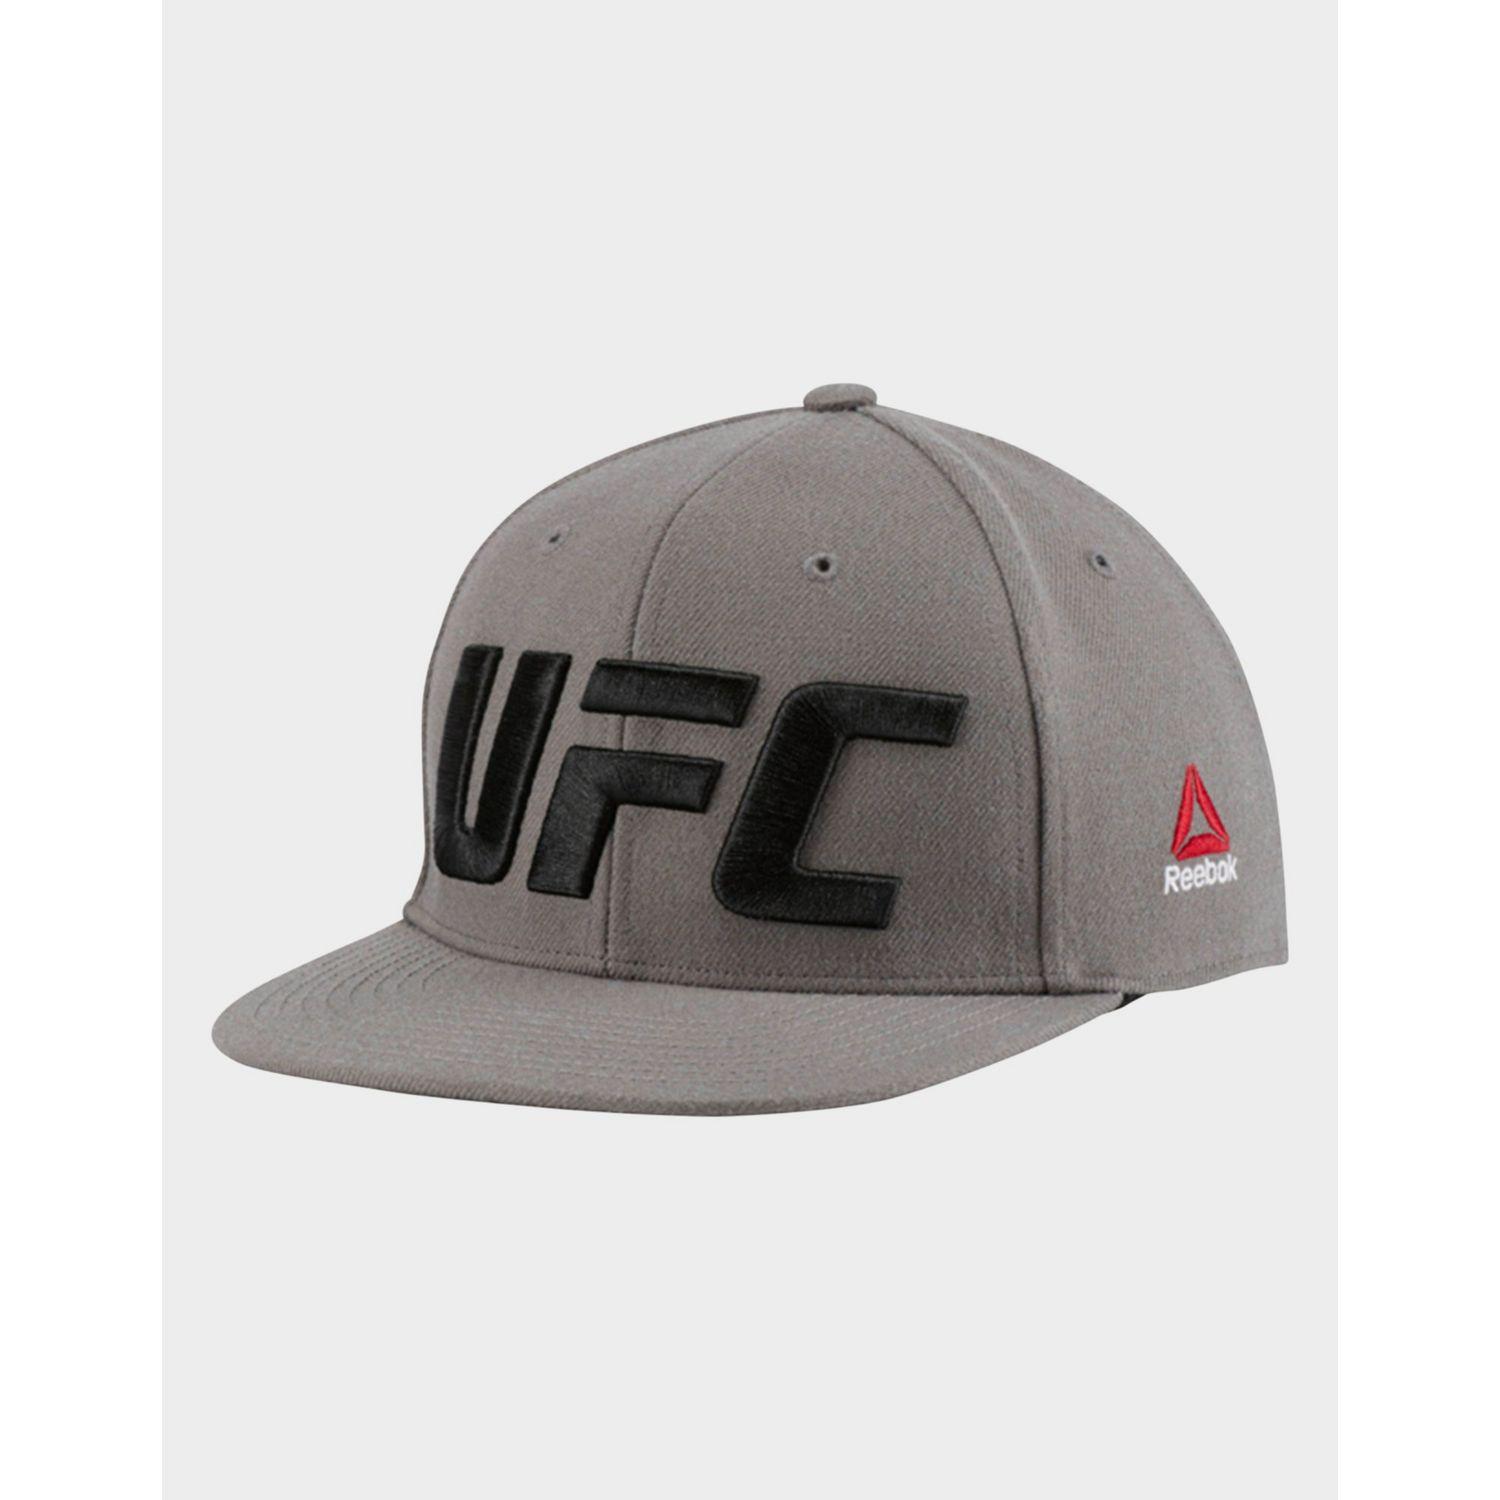 Reebok Casquette UFC Flat Peak